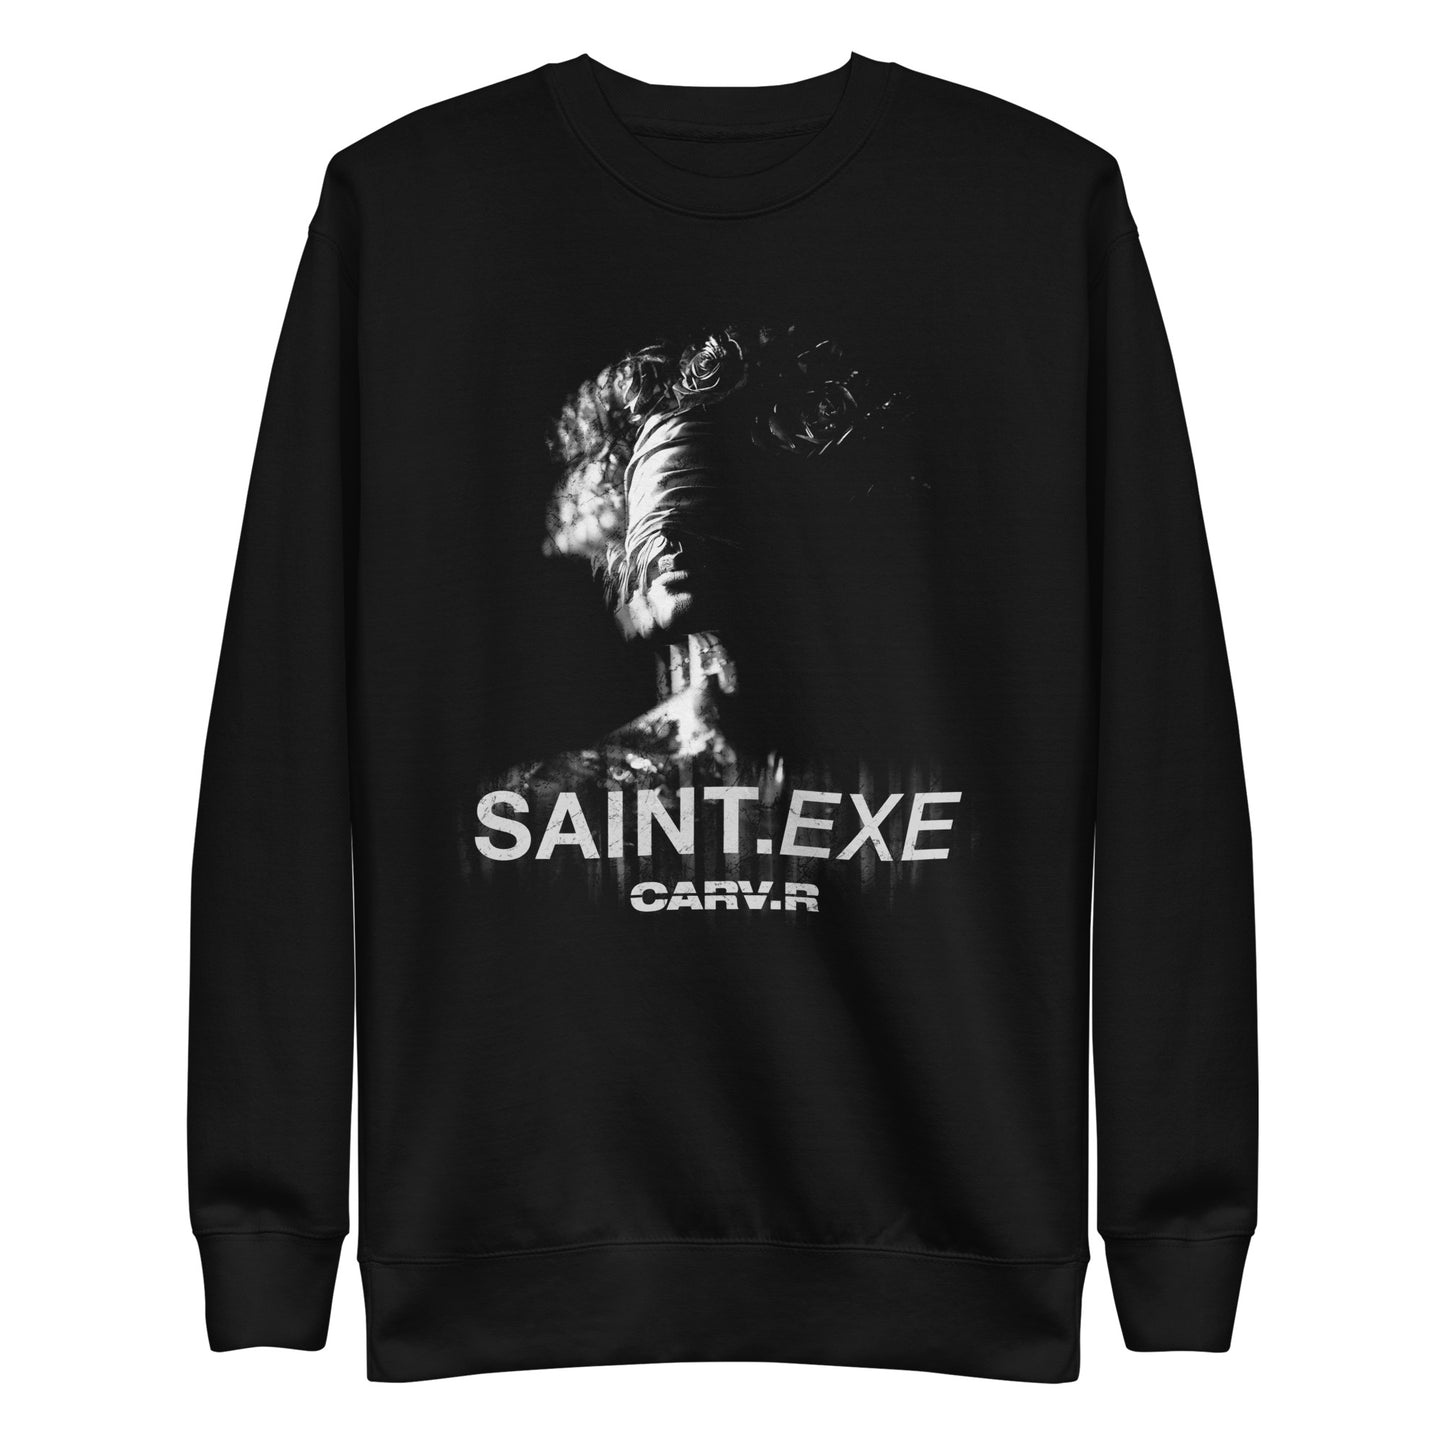 "CARV.R x SAINT.EXE" Unisex Long Sleeve Sweater